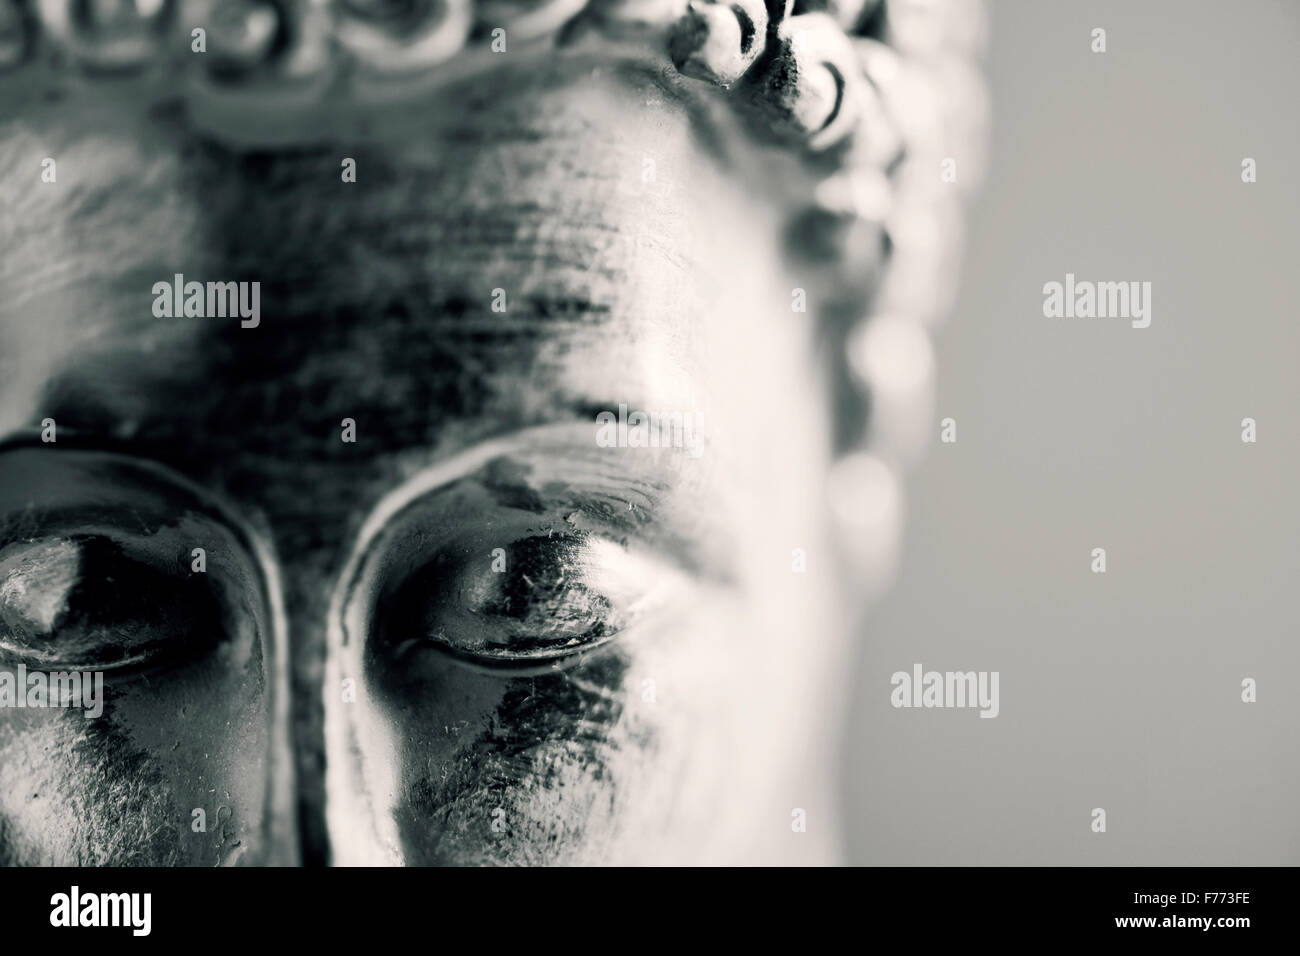 Détail de la face d'une représentation du Bouddha avec ses yeux fermés en duotone Banque D'Images